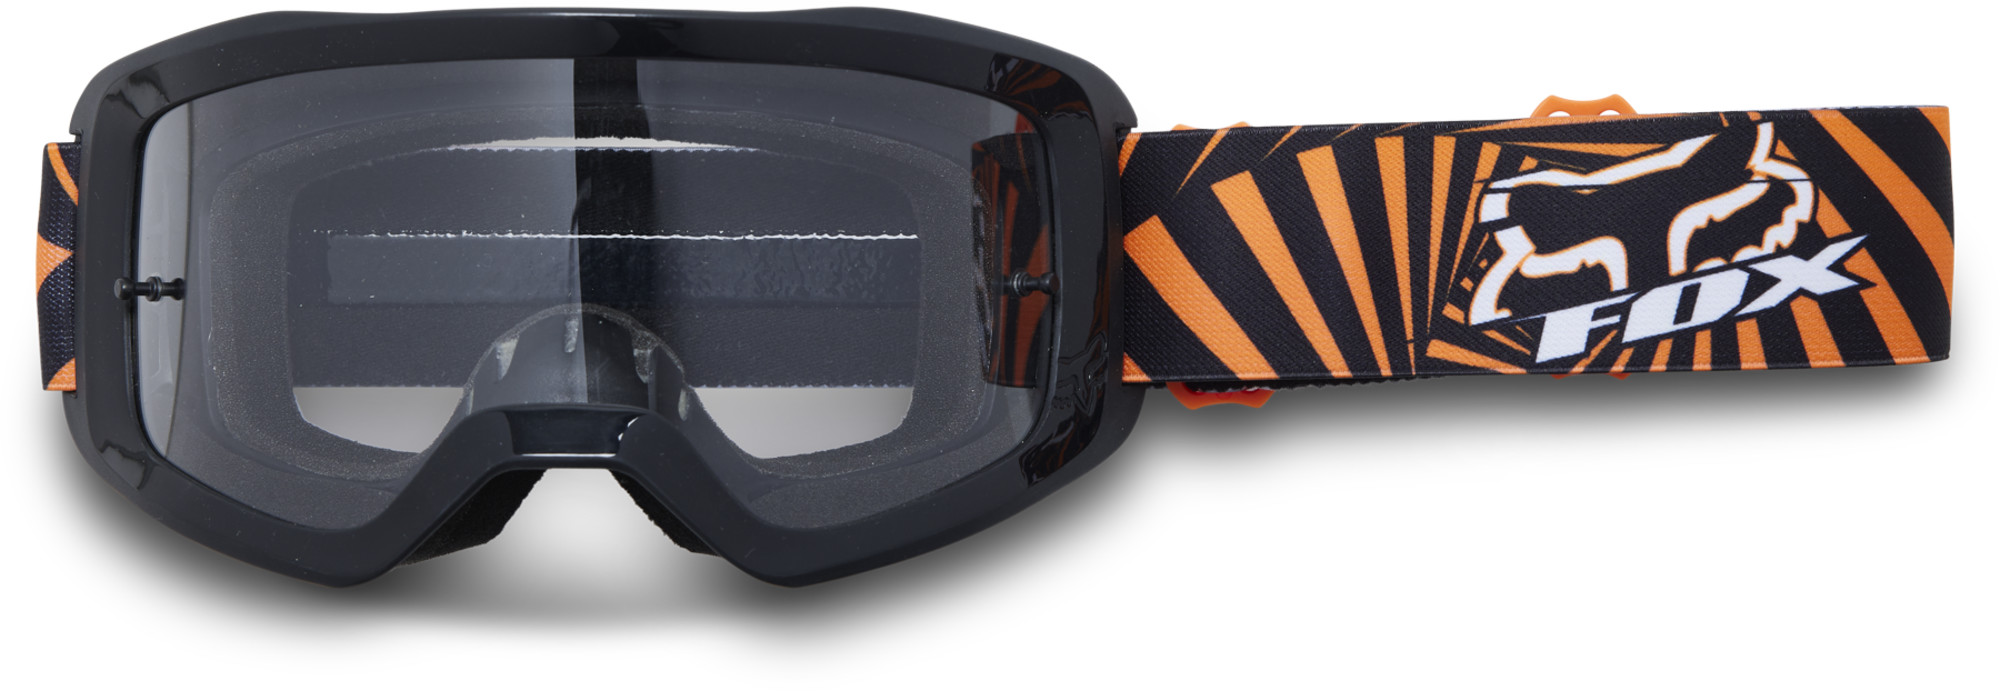 motocross lunettes & lentilles par fox racing pour enfants main goat